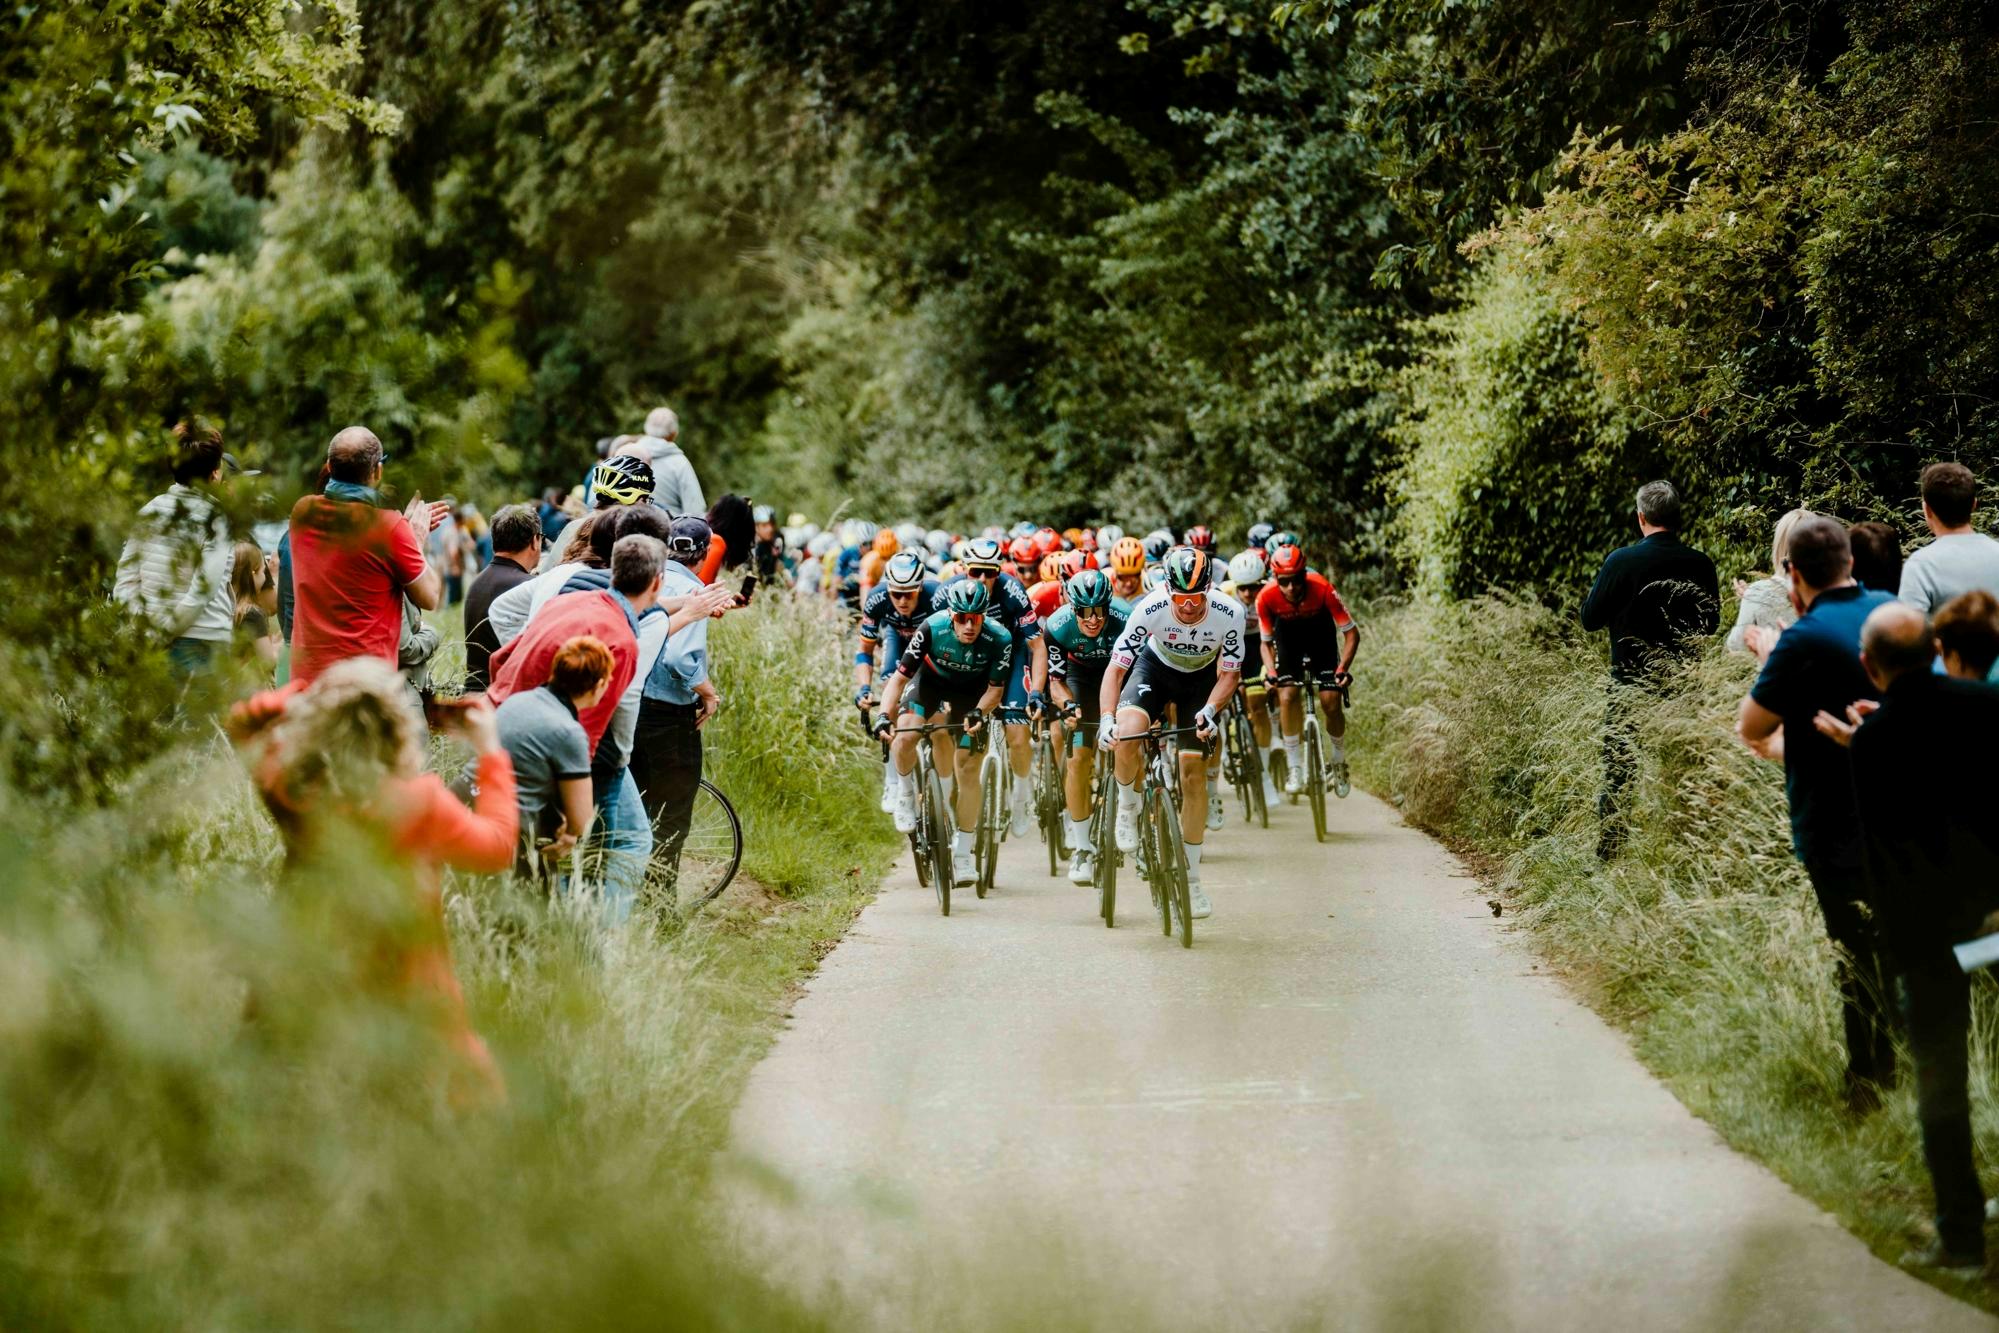 Laat u als vipgast onderdompelen in de Ronde van Limburg